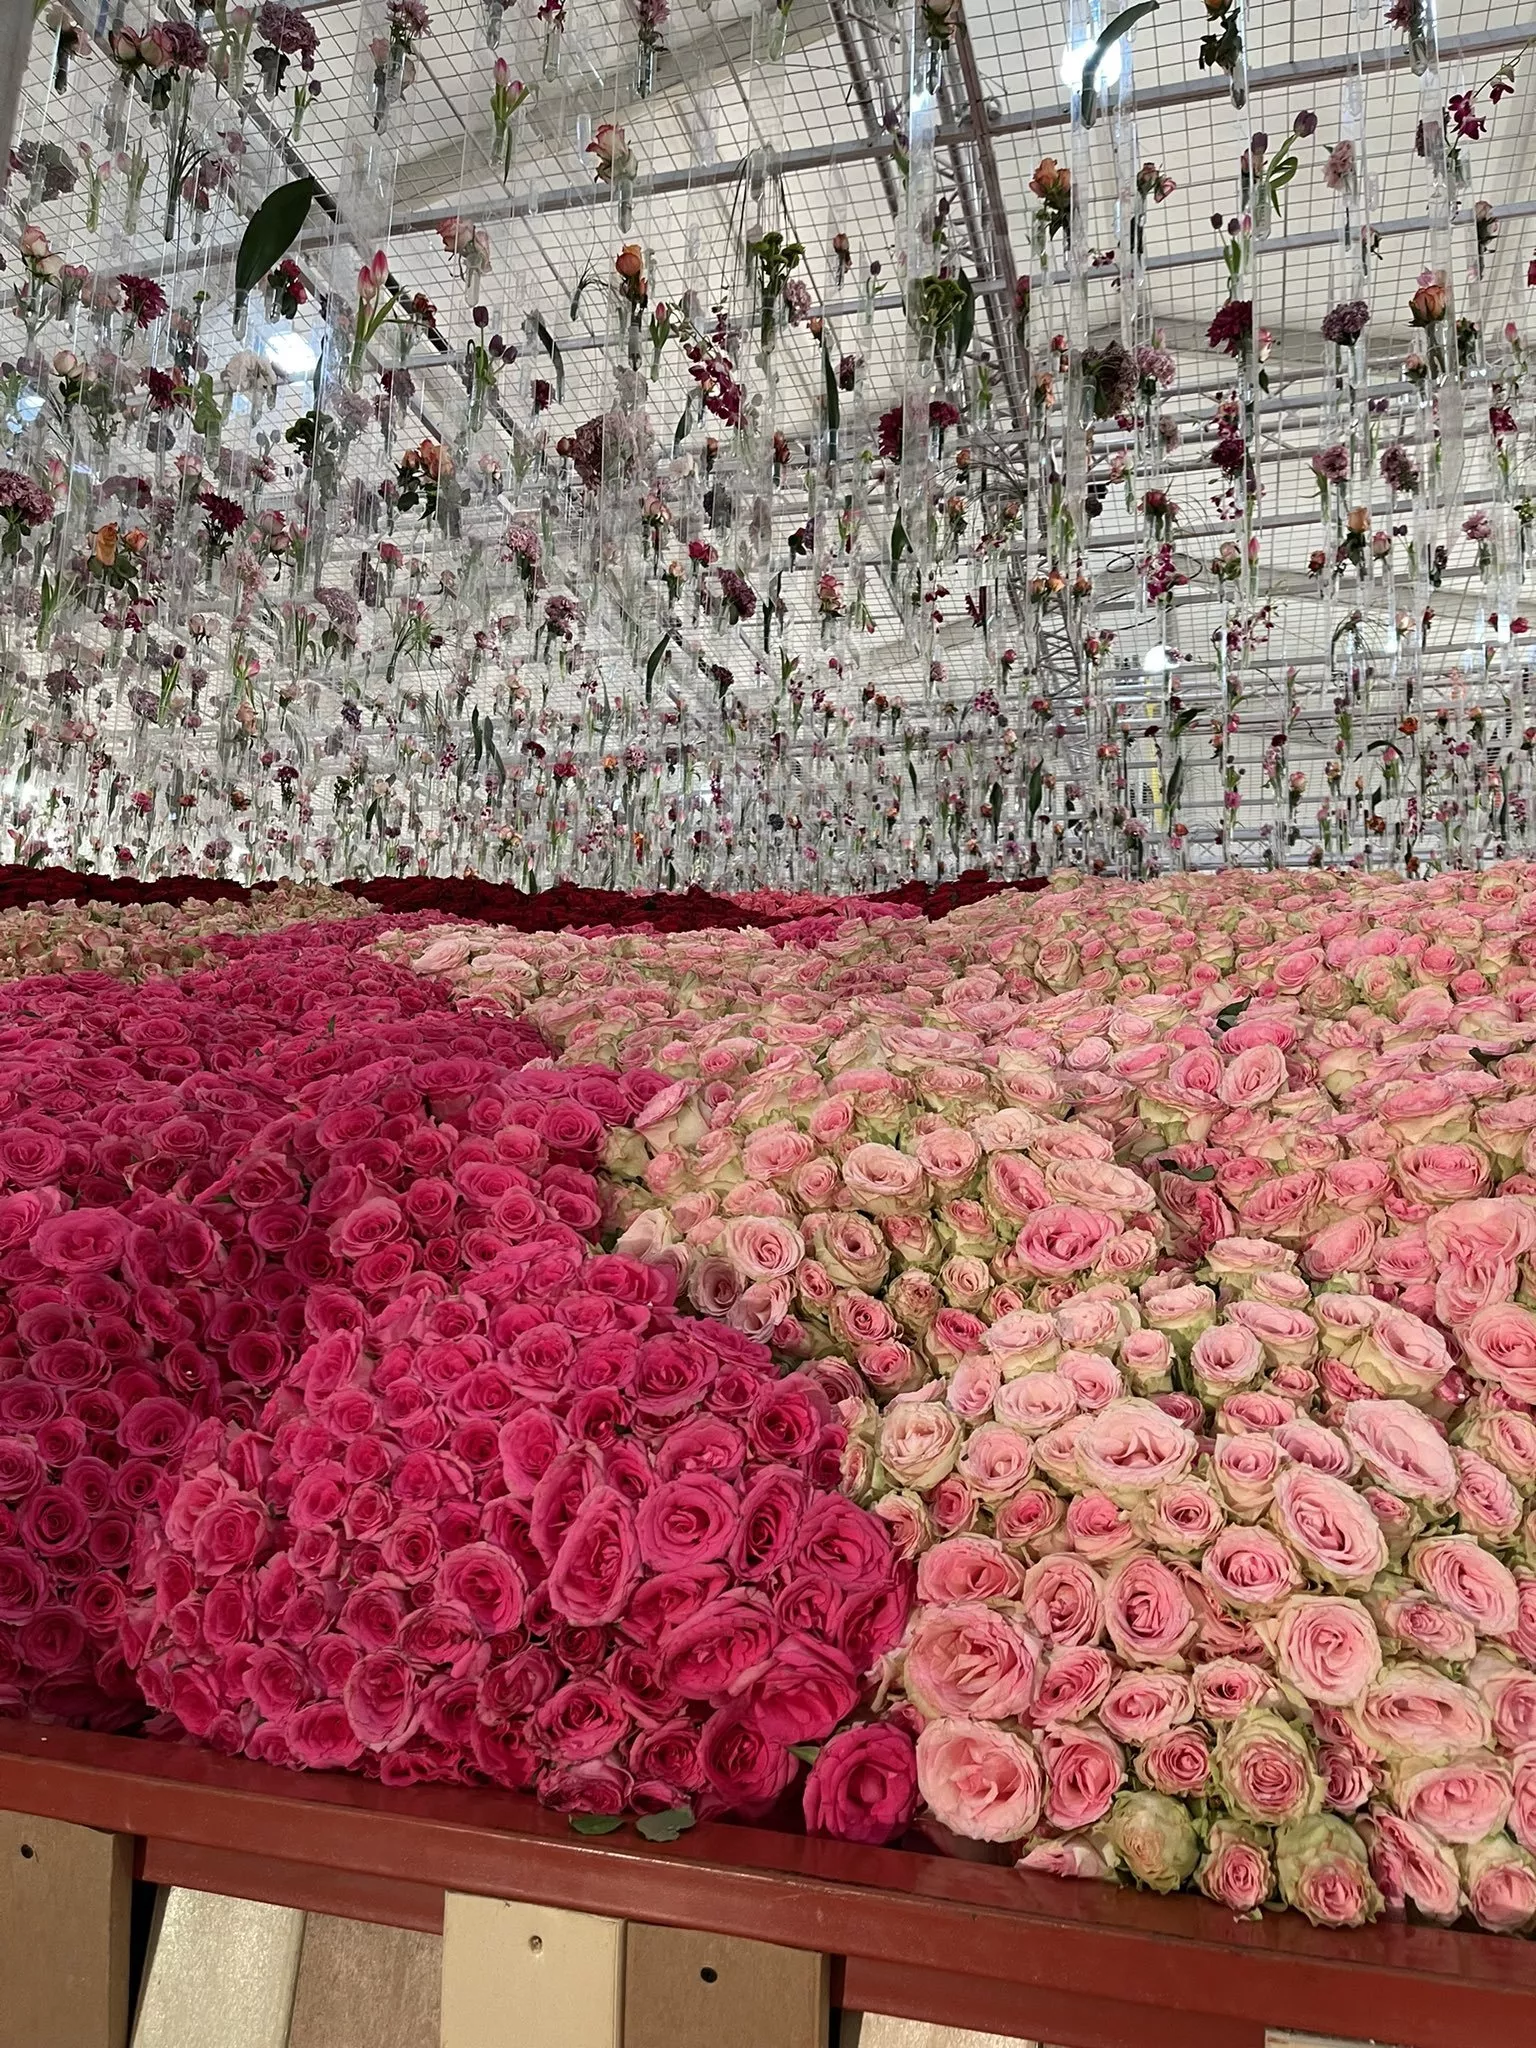 مهرجان طائف الورد يدخل موسوعة غينيس 2022 بأكبر سلَّة ورد في العالم